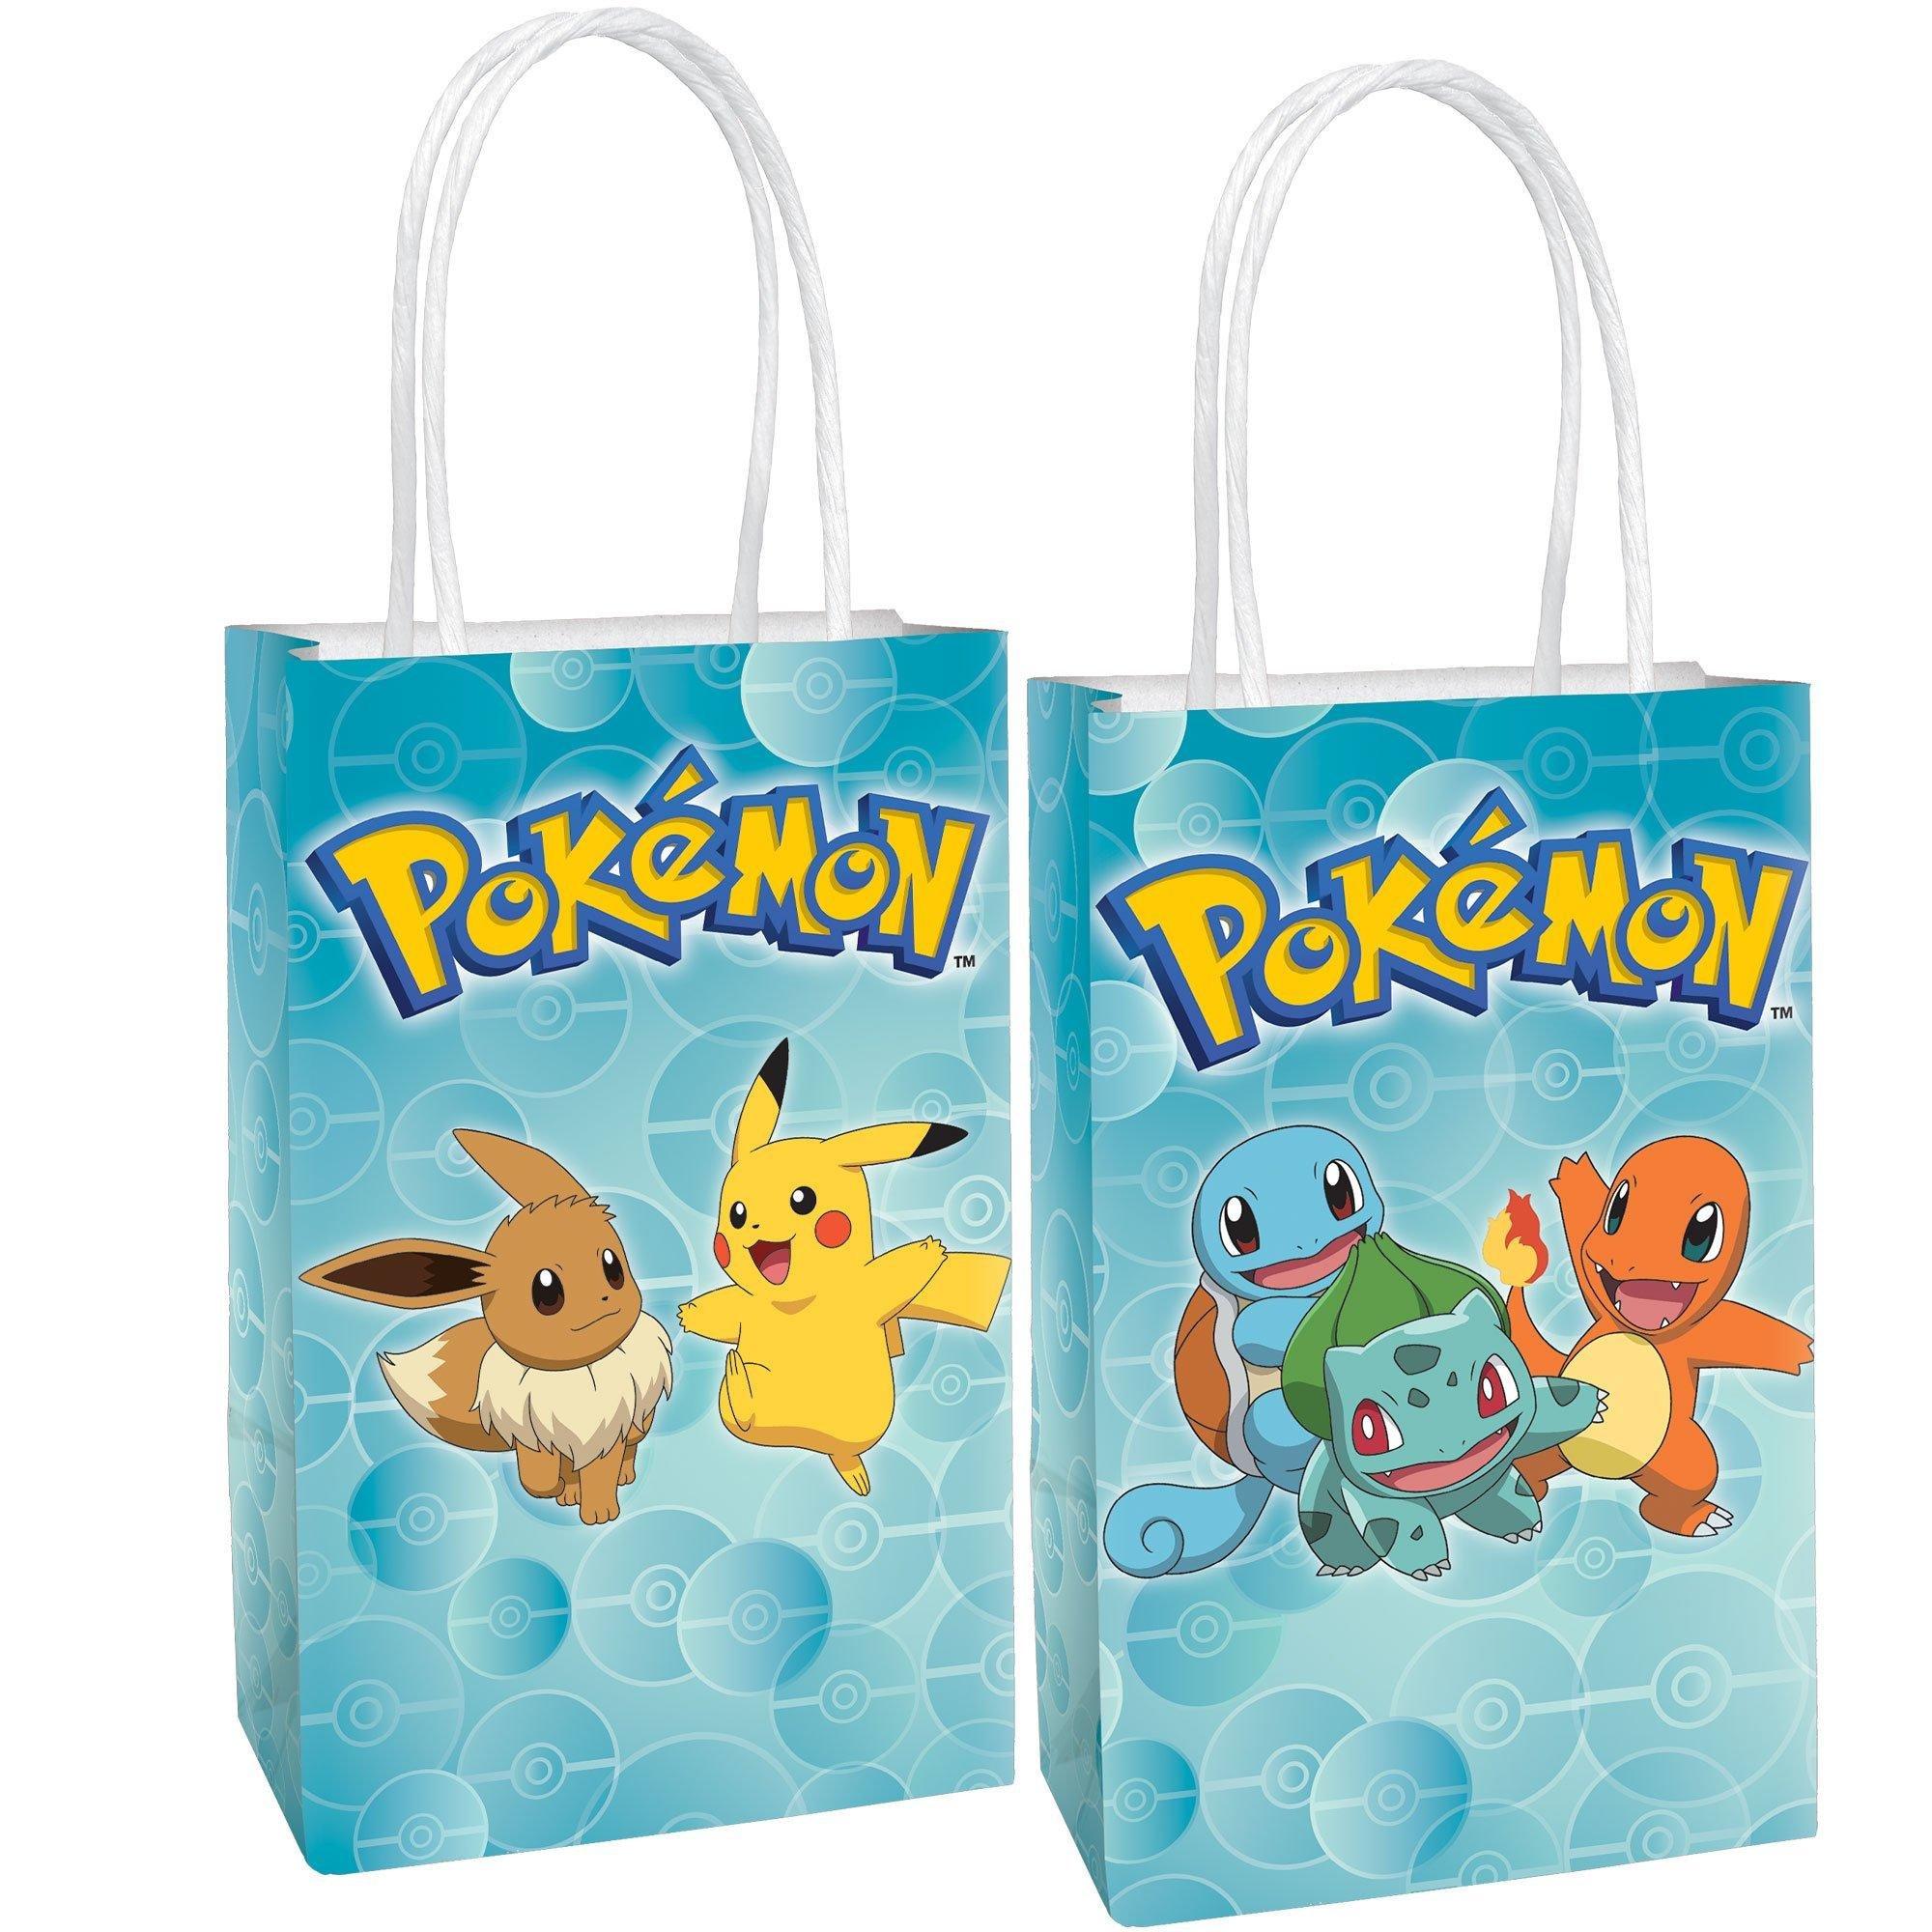 Goodie bags  Pokemon birthday party, Pokemon themed party, Pokemon party